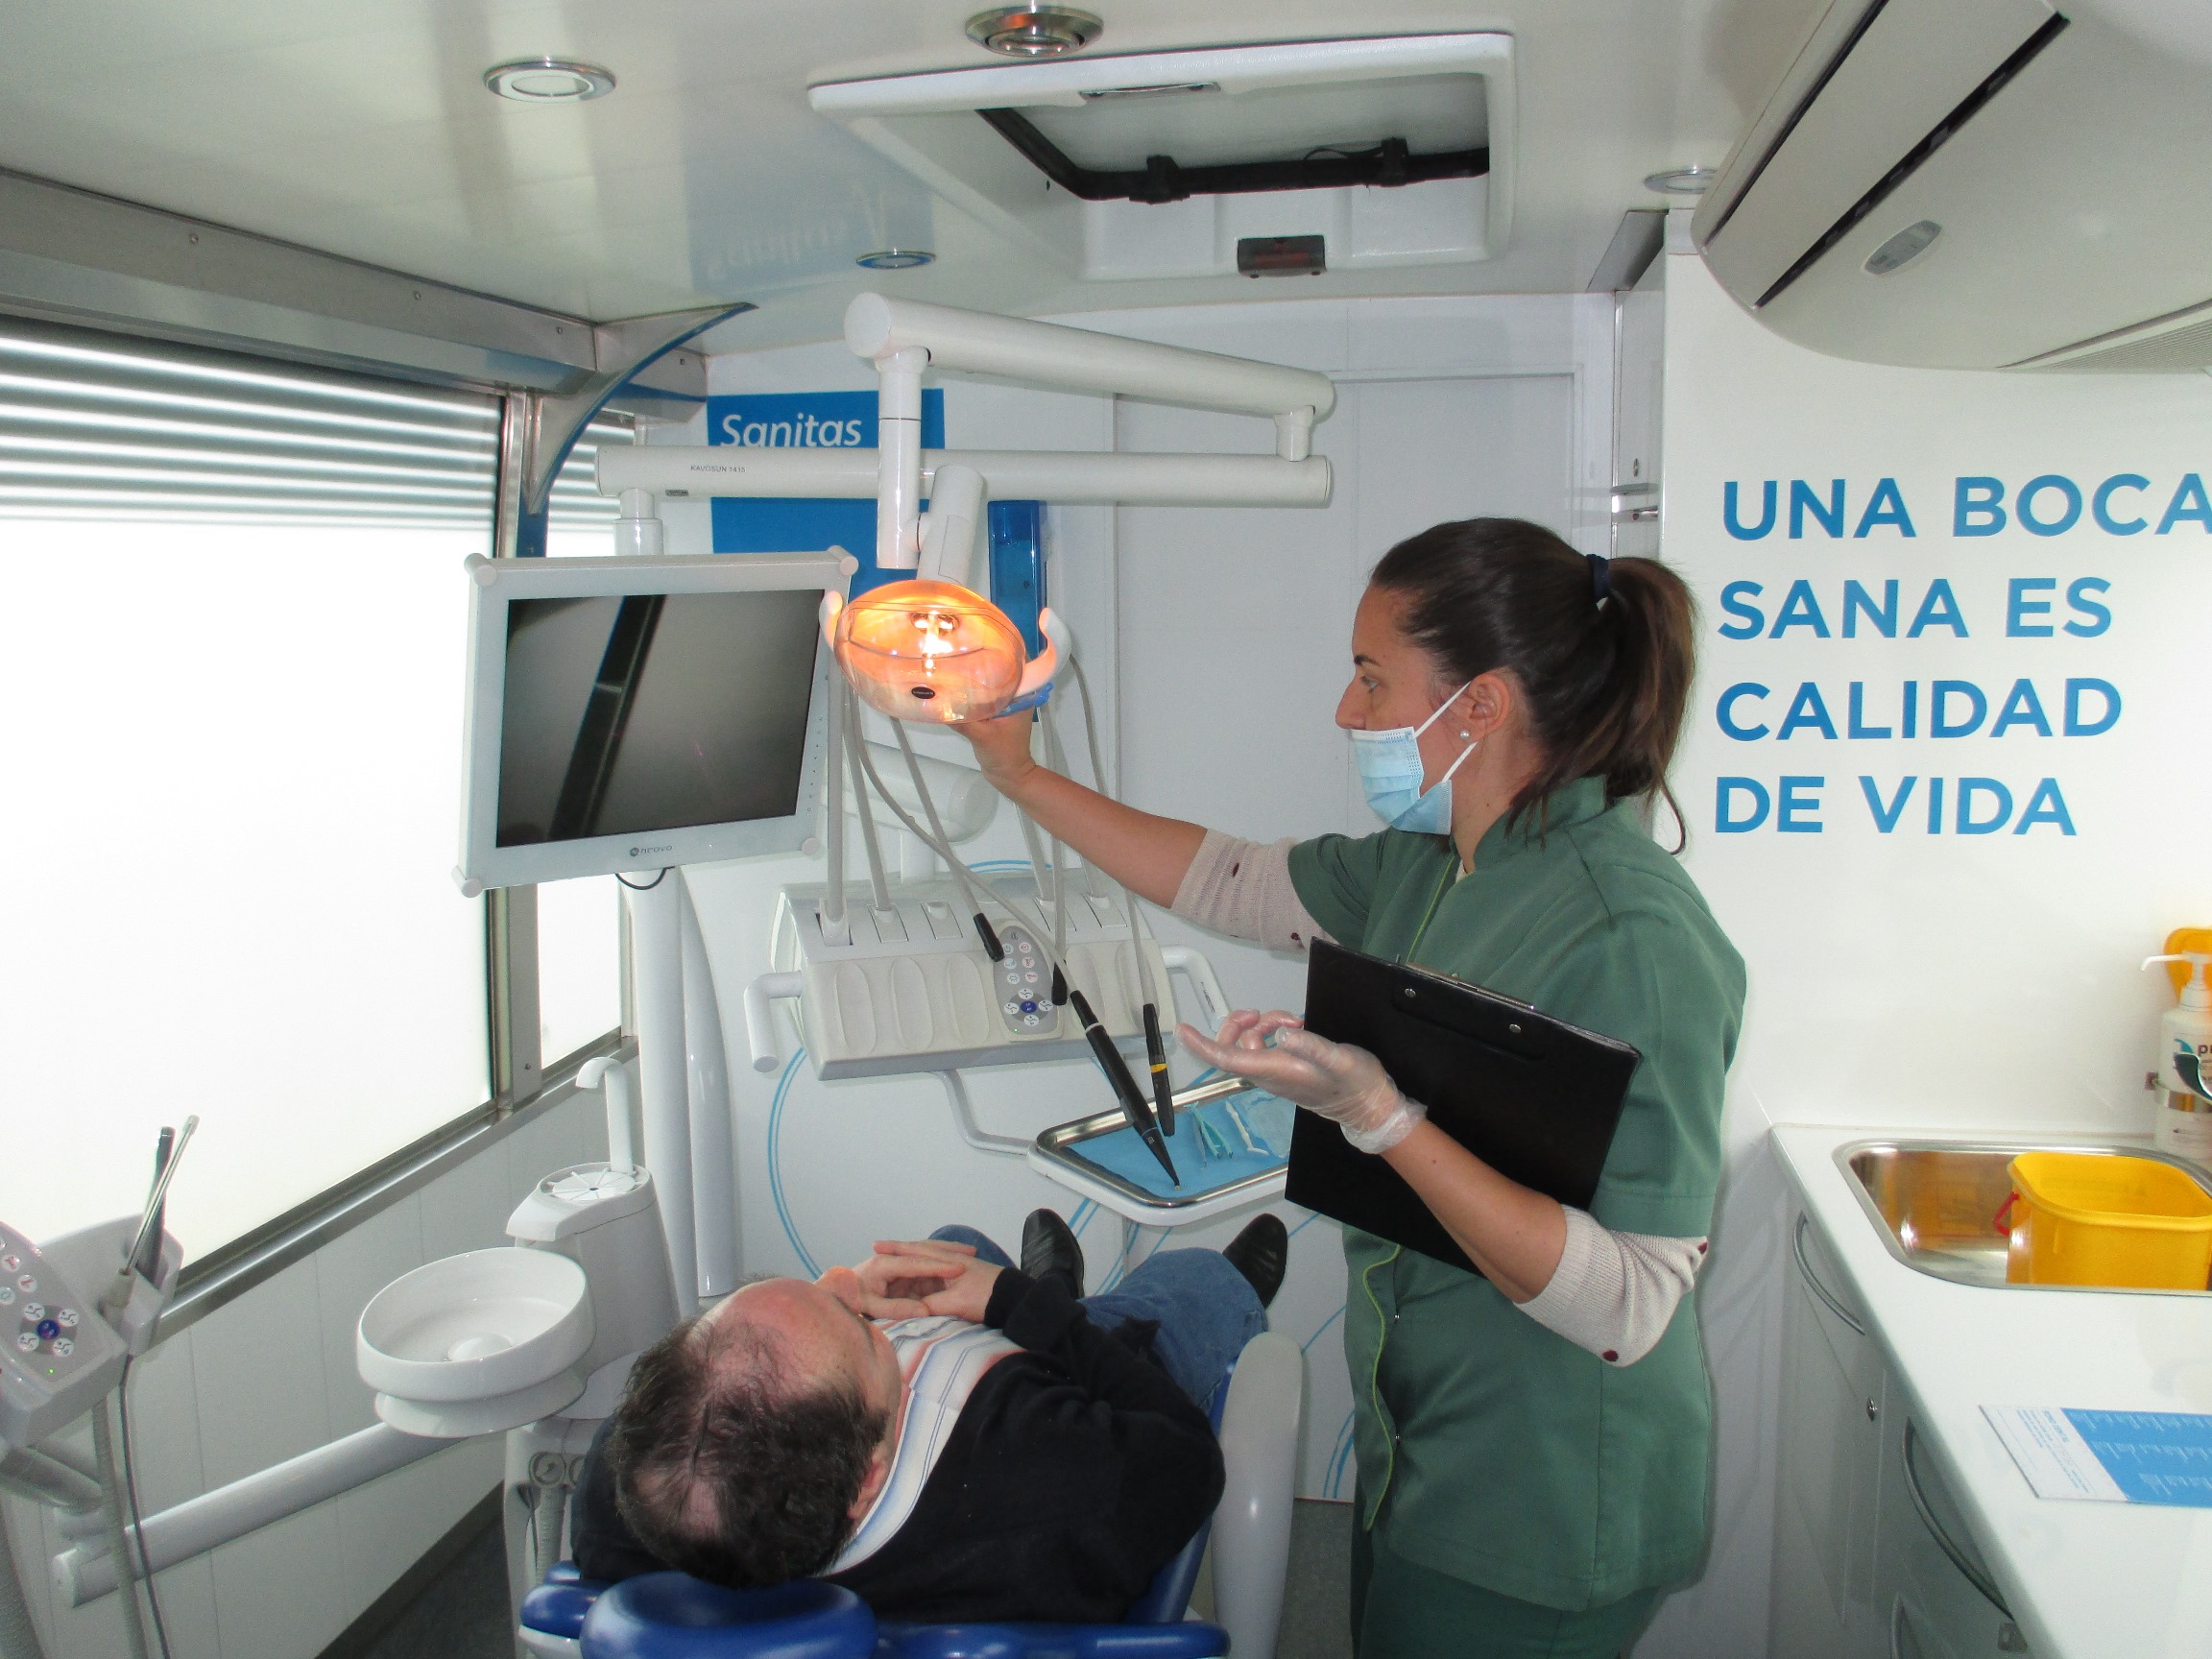 Unidad Móvil de Sanitas Dental visita el centro de Sanitas Residencial Moraleja el de Las Rozas - Dependencia Social Media